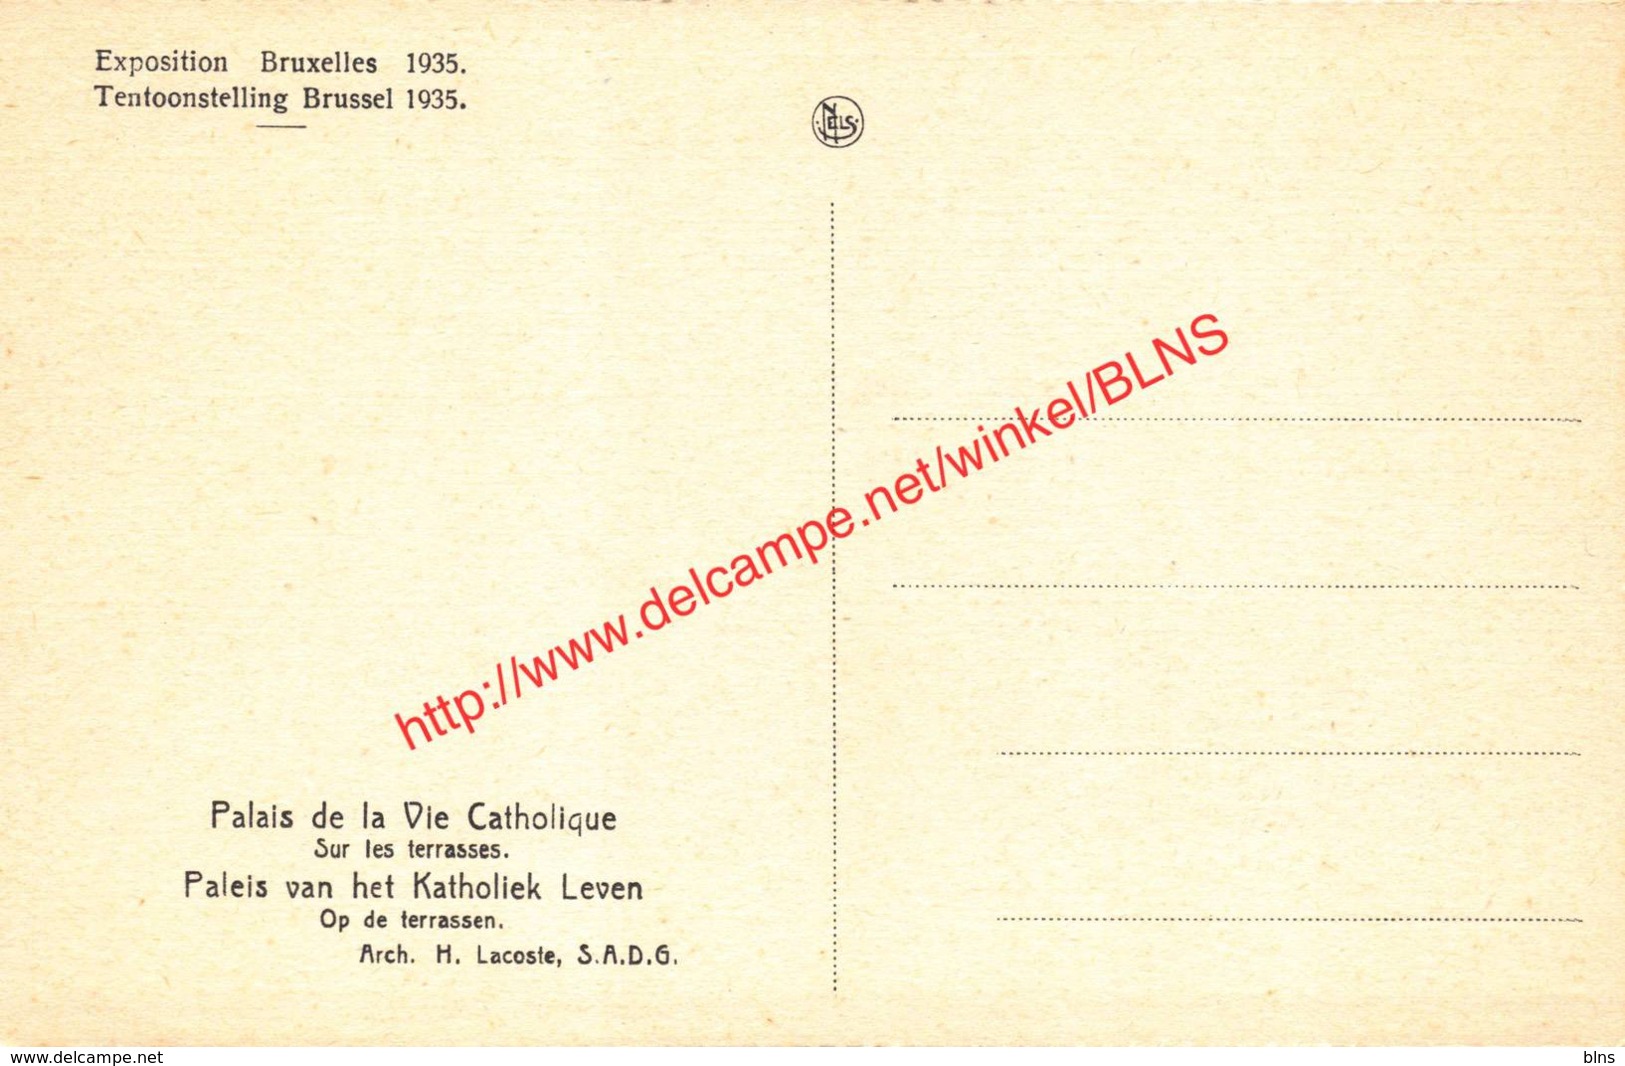 Palais De La Vie Catholique - Exposition Universelle Et Internationale De Bruxelles 1935 - Brussel Bruxelles - Expositions Universelles